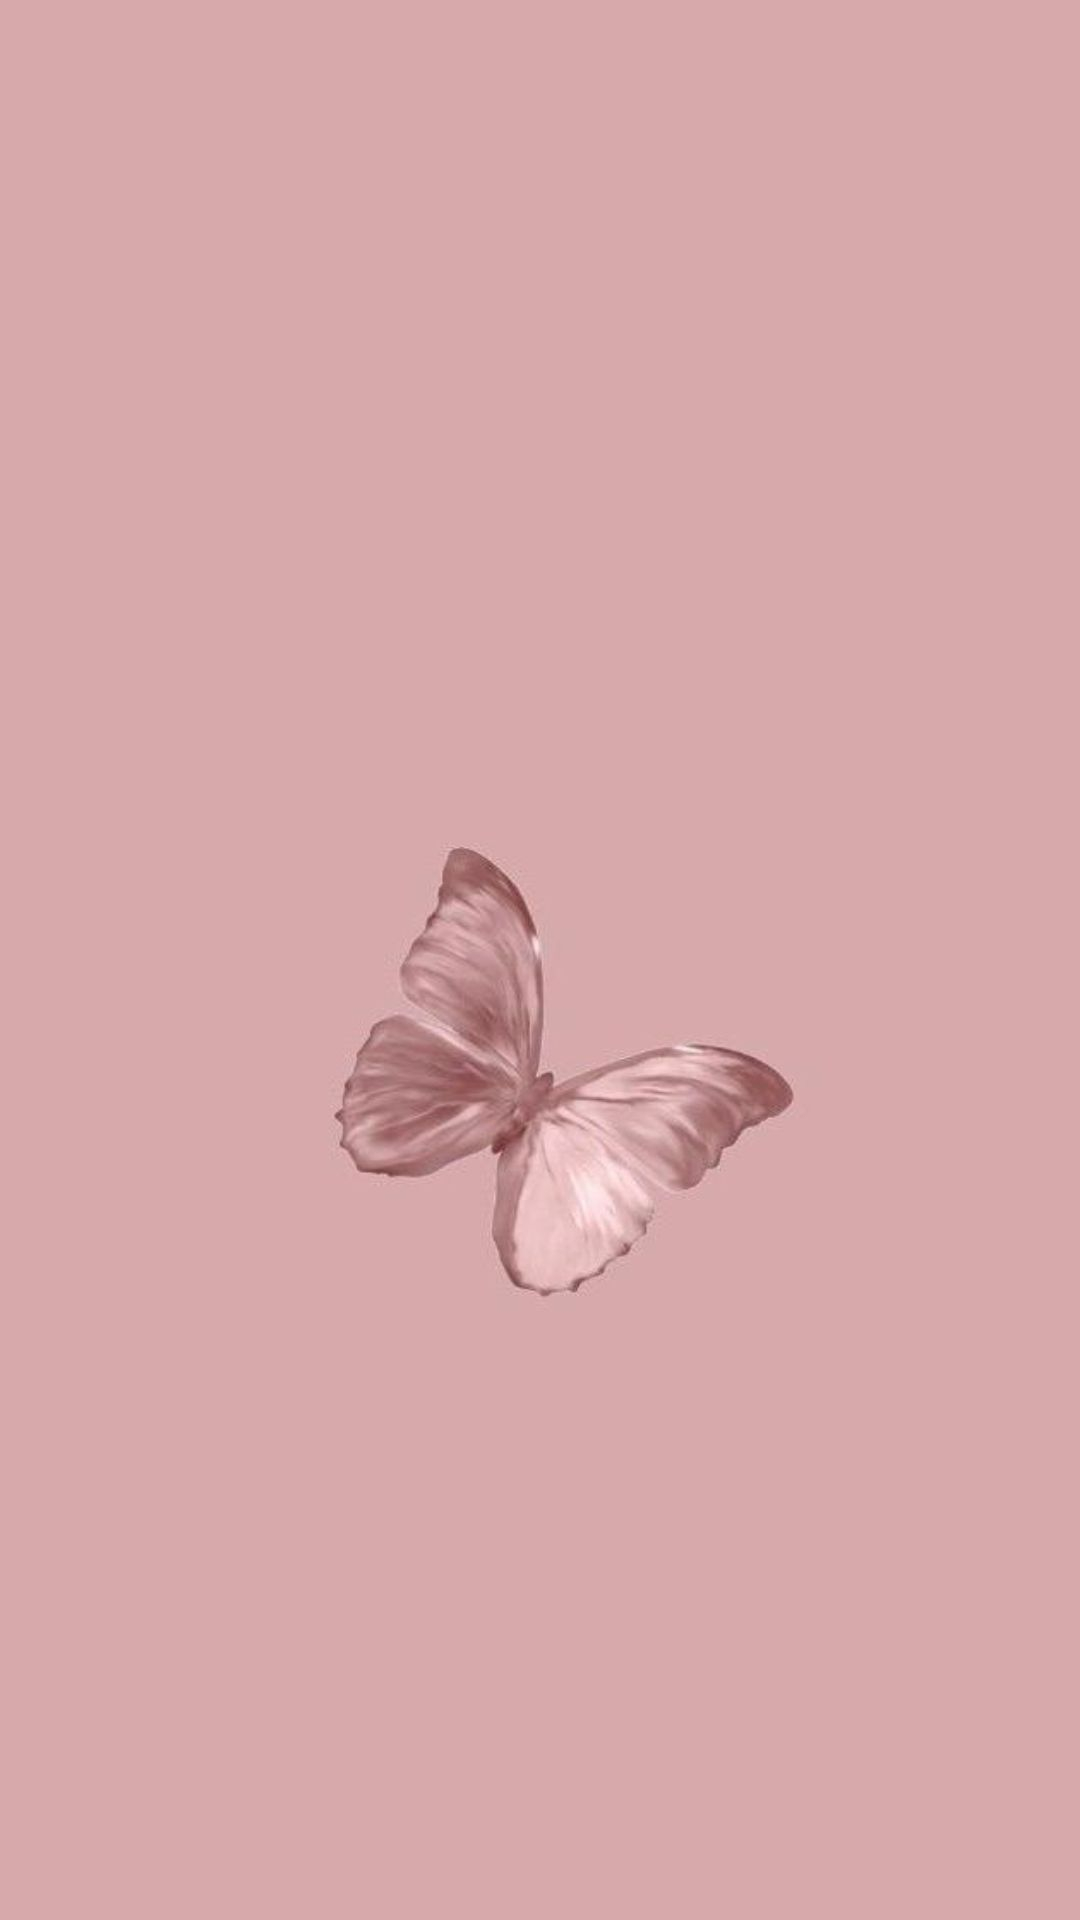 1080x1920 Butterflies Wallpaper- Top Best Quality Butterflies Backgrounds (HD,4k